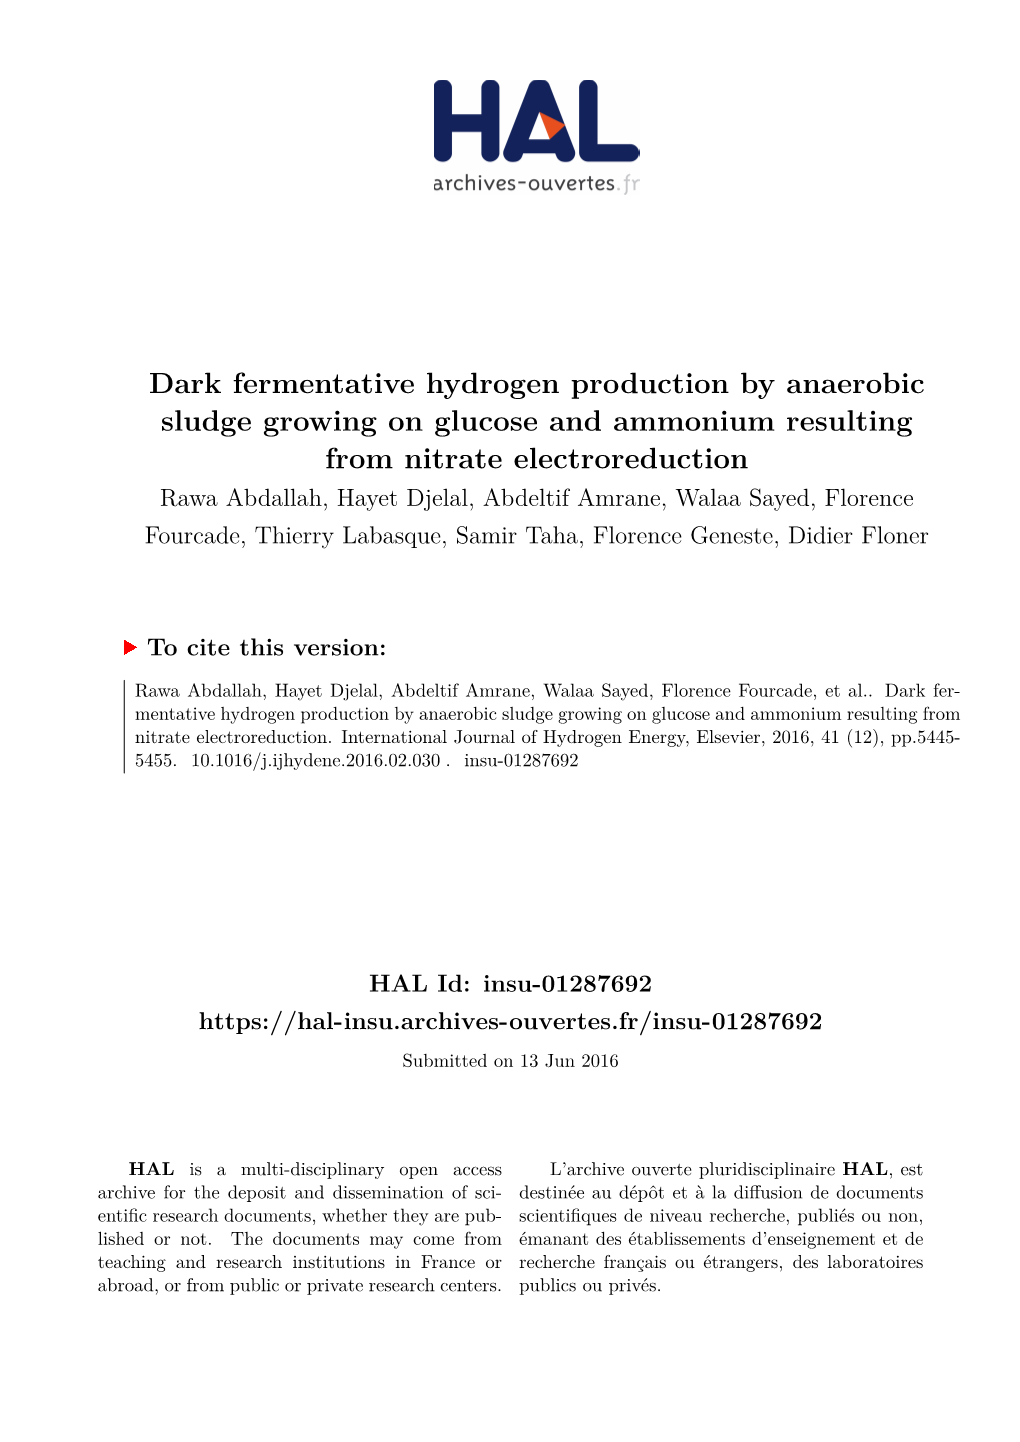 Dark Fermentative Hydrogen Production by Anaerobic Sludge